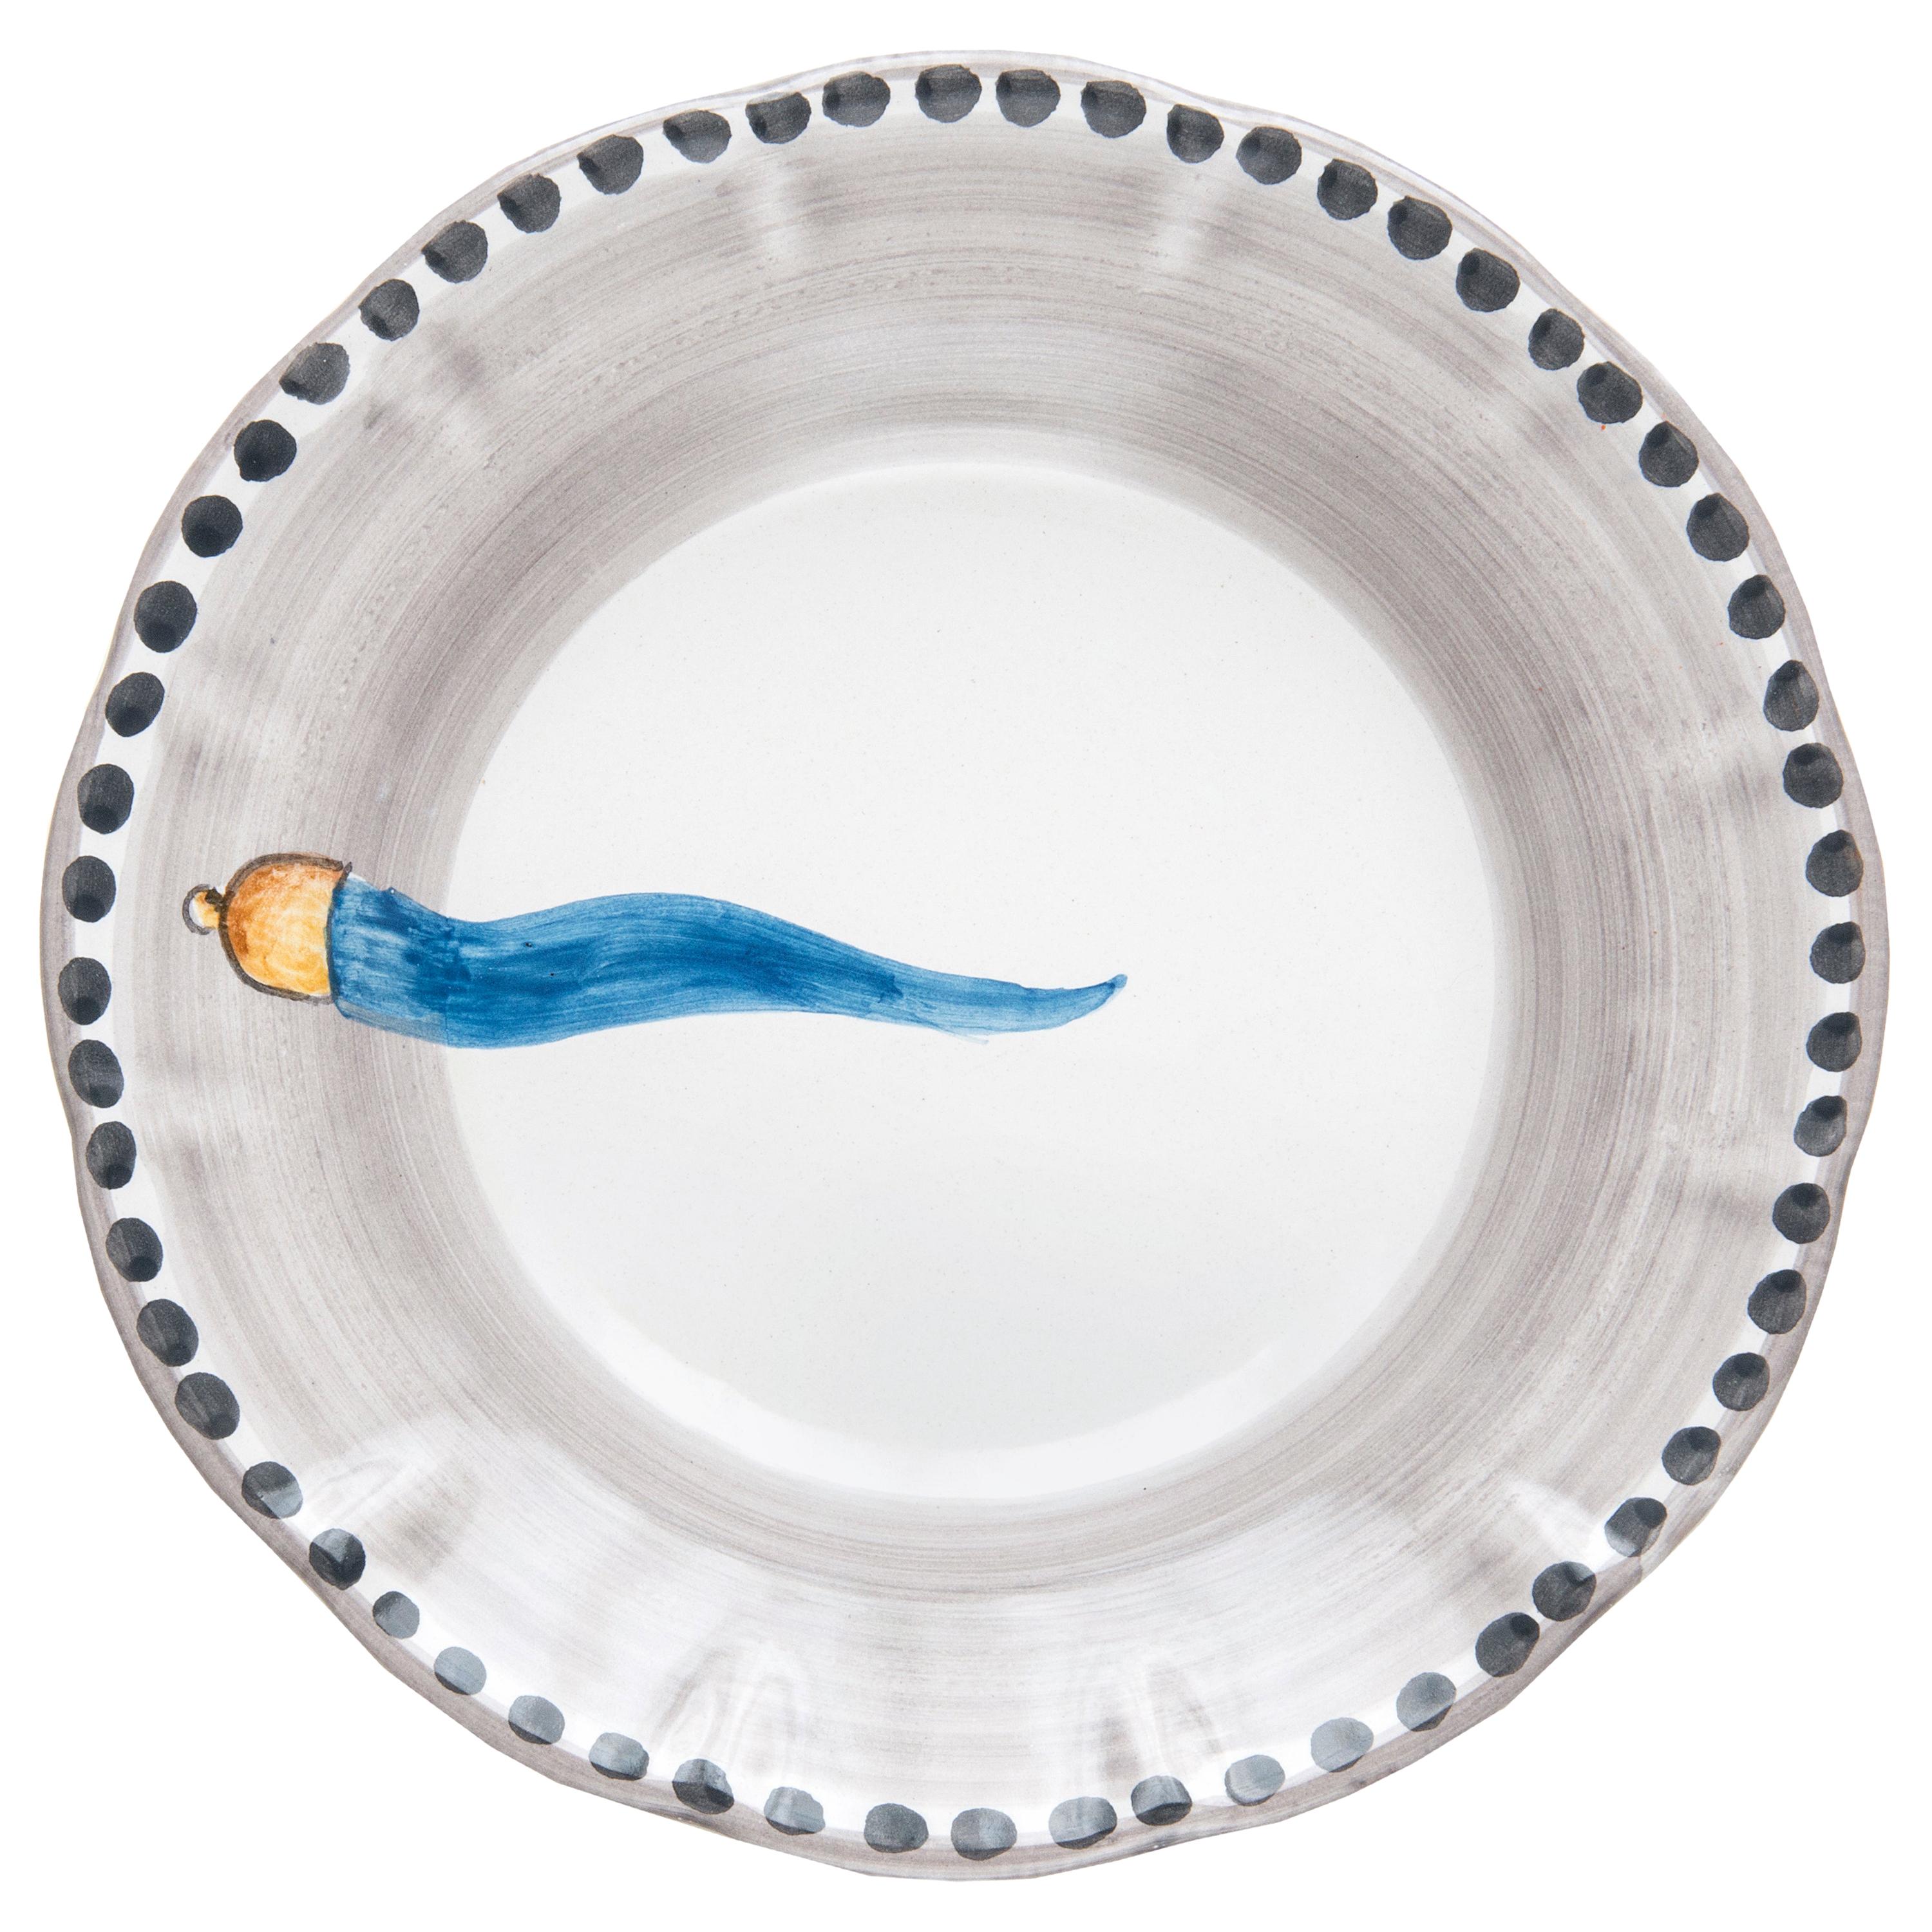 Assiette à dîner en céramique peinte à la main du 21e siècle en bleu clair et blanc, faite à la main